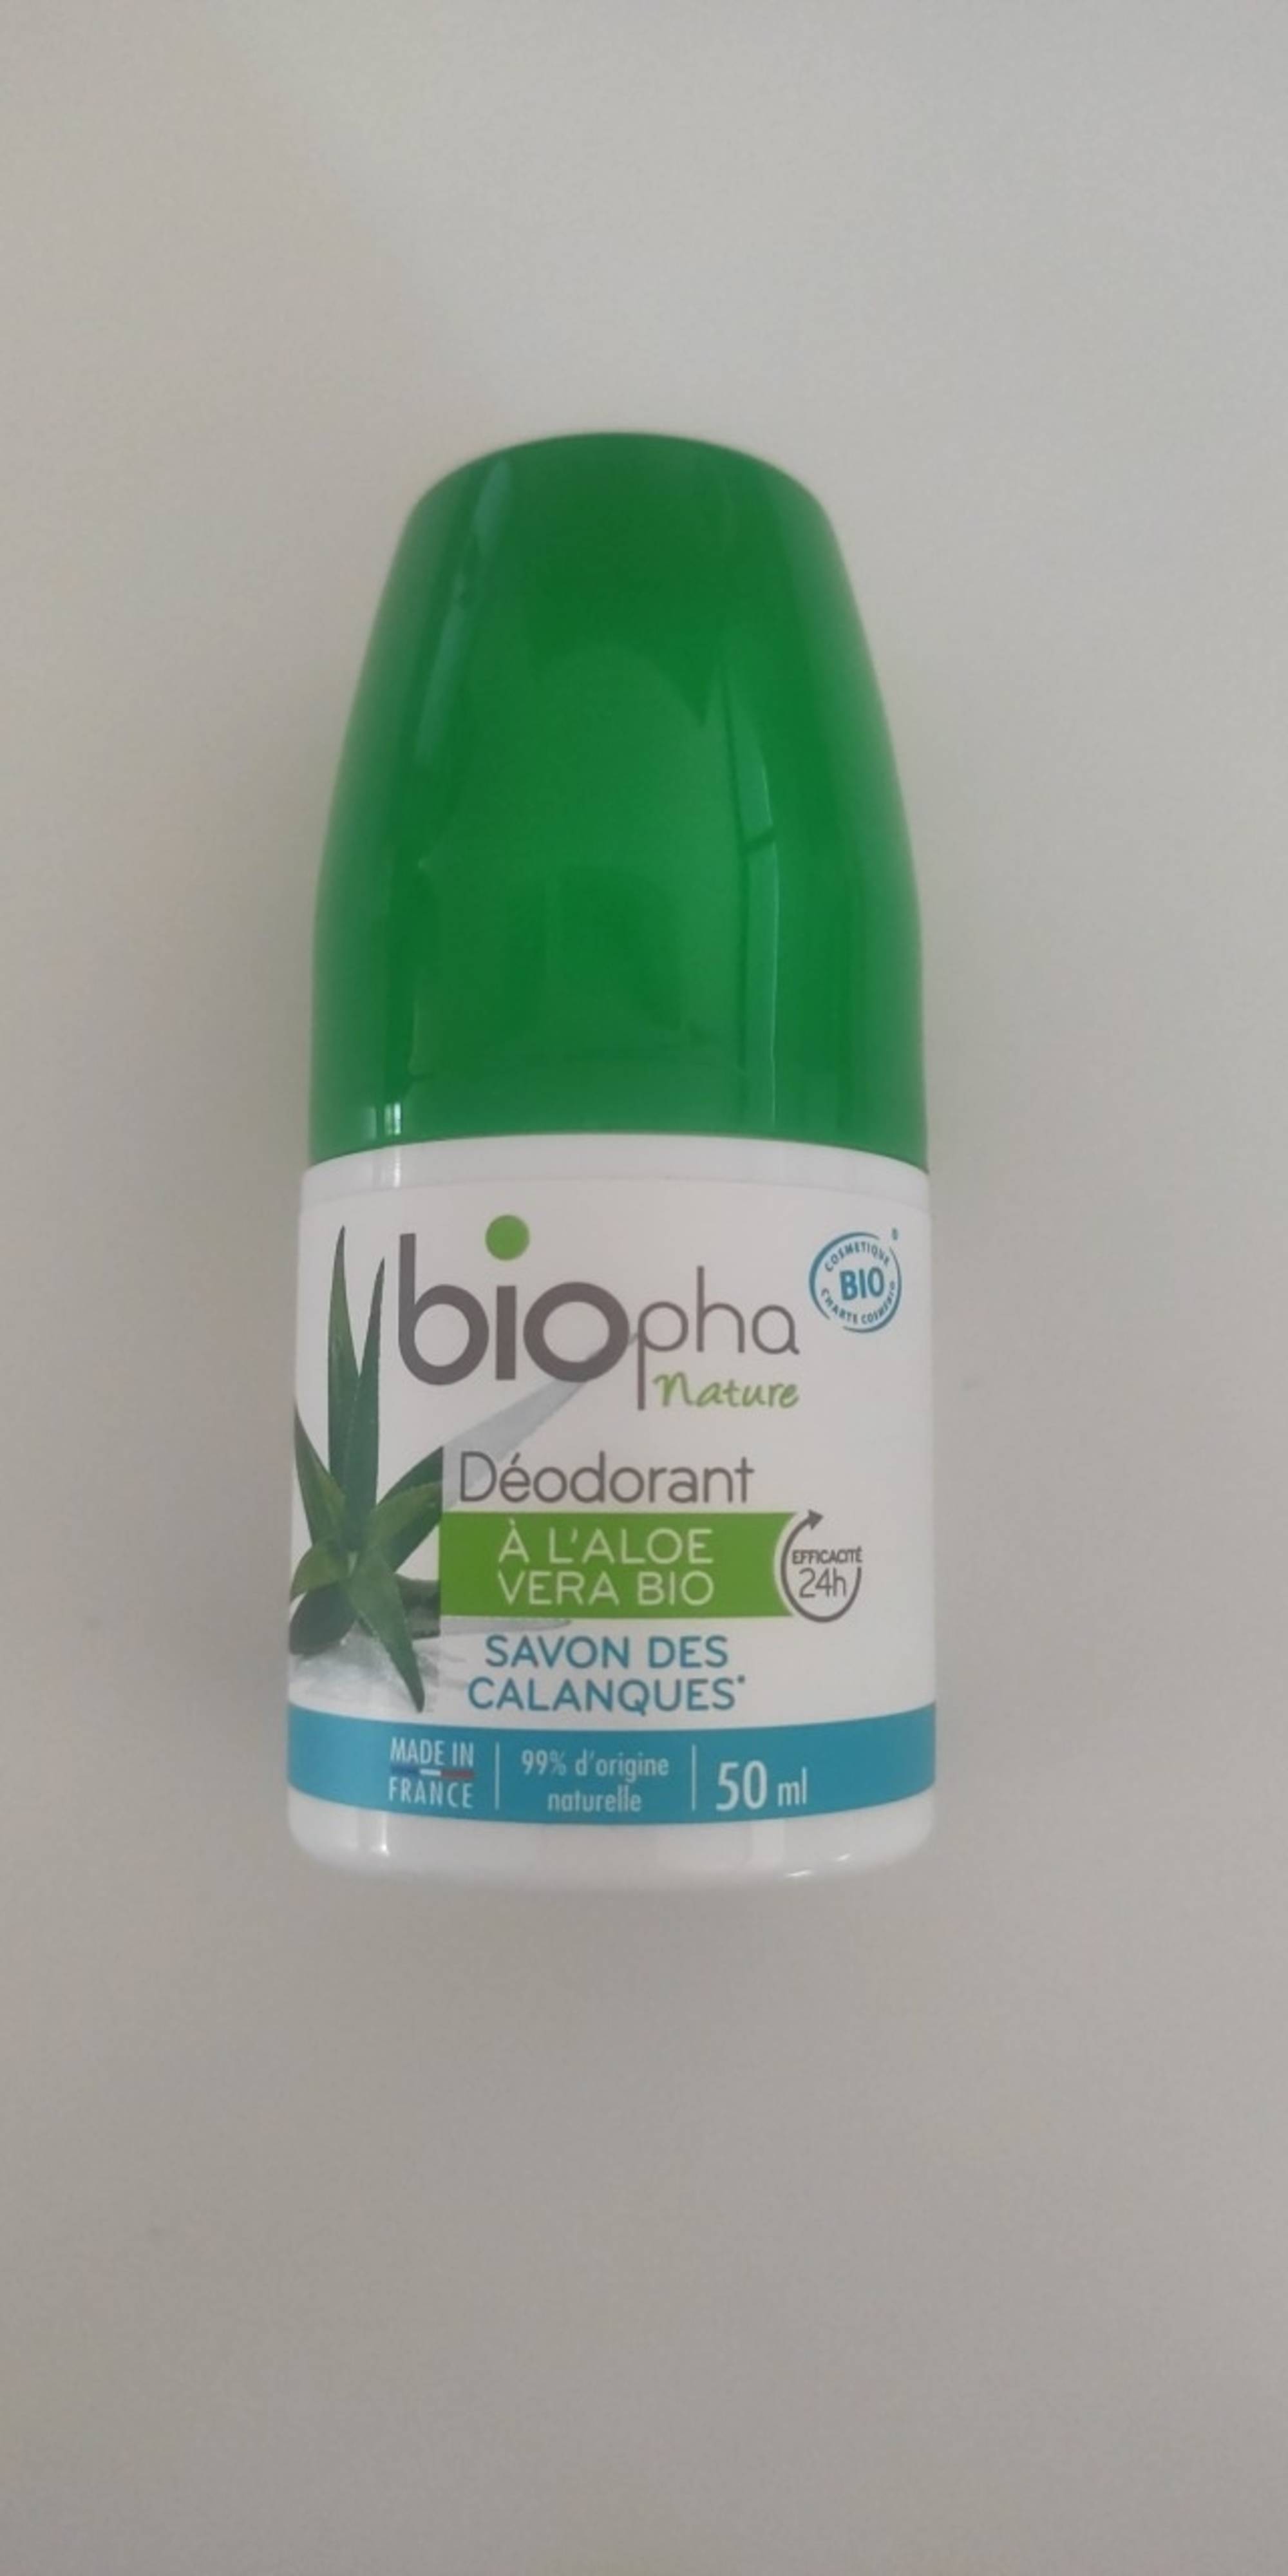 BIOPHA - Nature savon des calanques - Déodorant à l'aloe vera bio